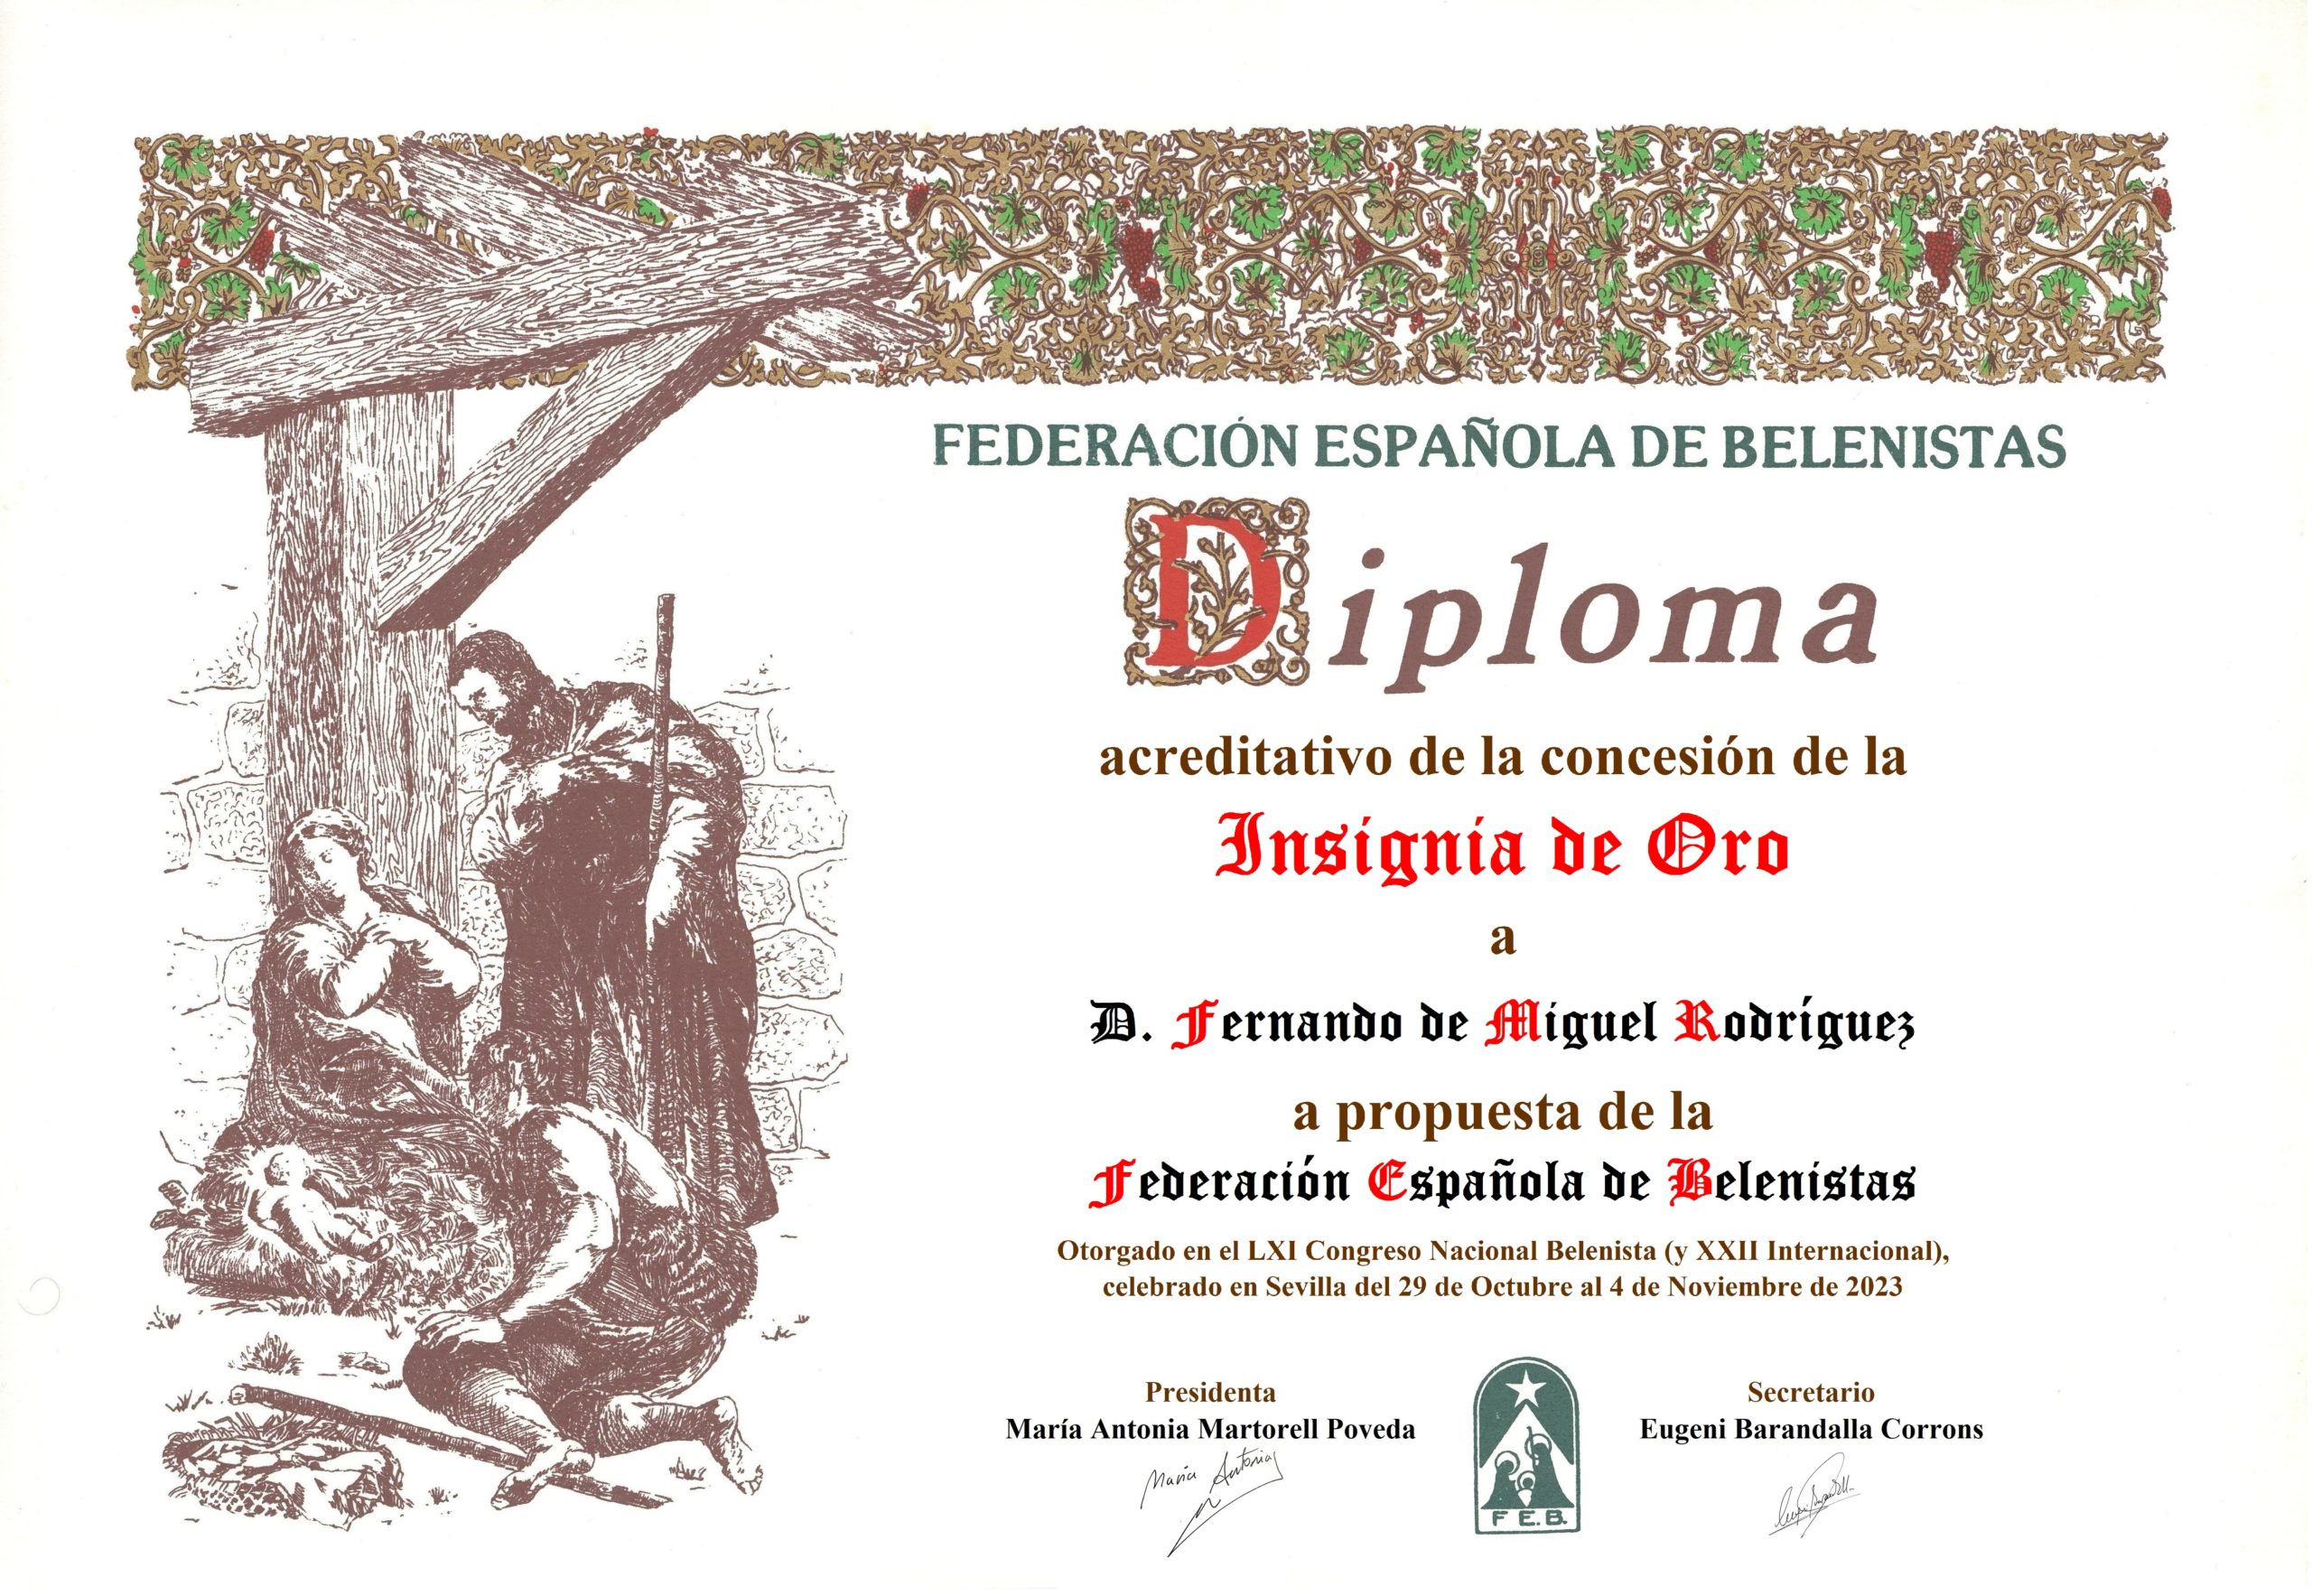 Fernando de Miguel Rodríguez - Título/Diploma Insignia de Oro FEB 2023